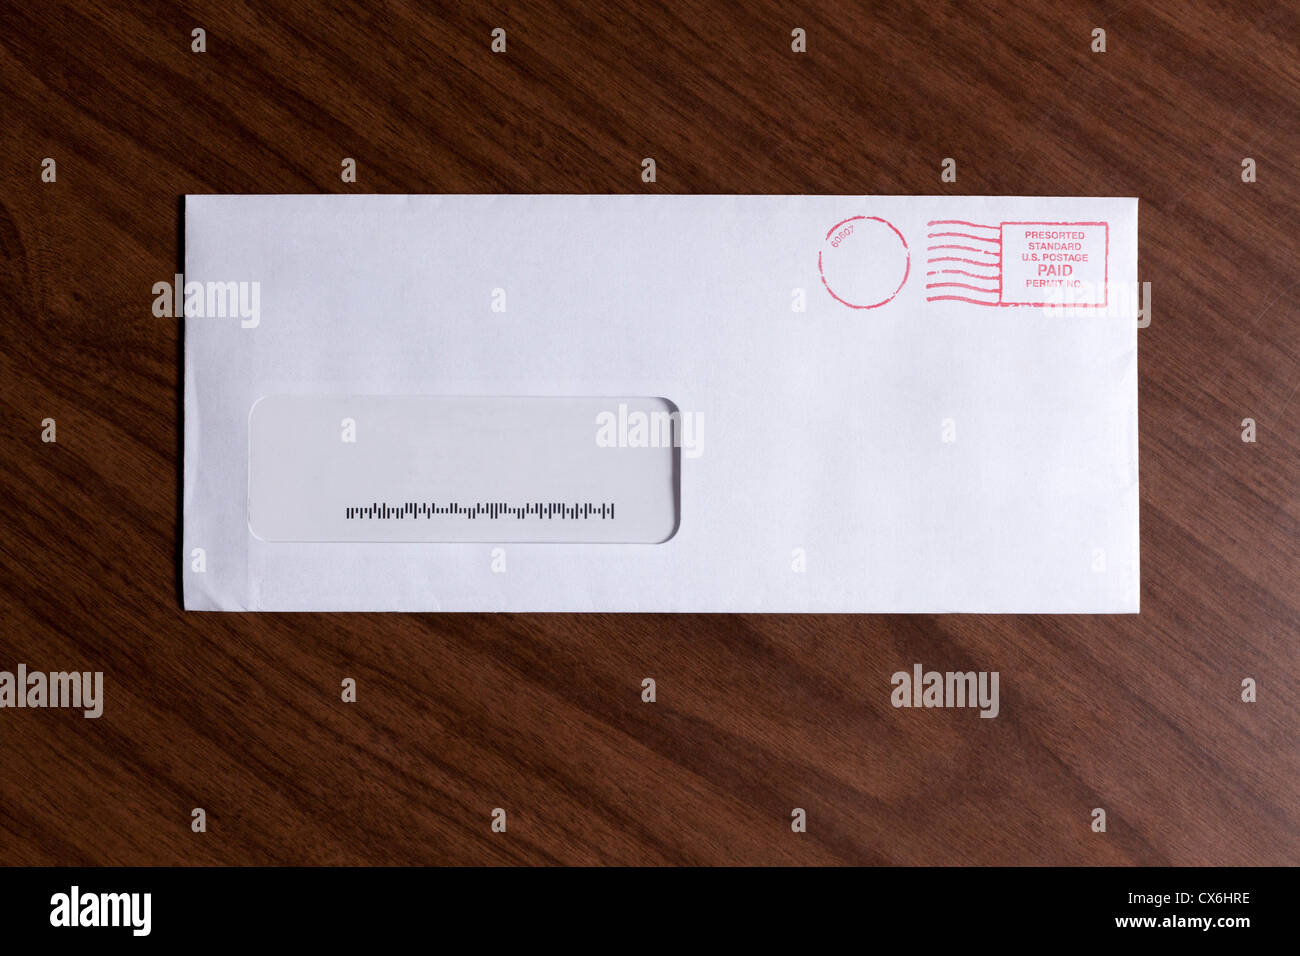 Une Fenetre Enveloppe Avec Aucune Adresse Mais Un Code Barres Et Des Timbres D Encre Rouge Photo Stock Alamy